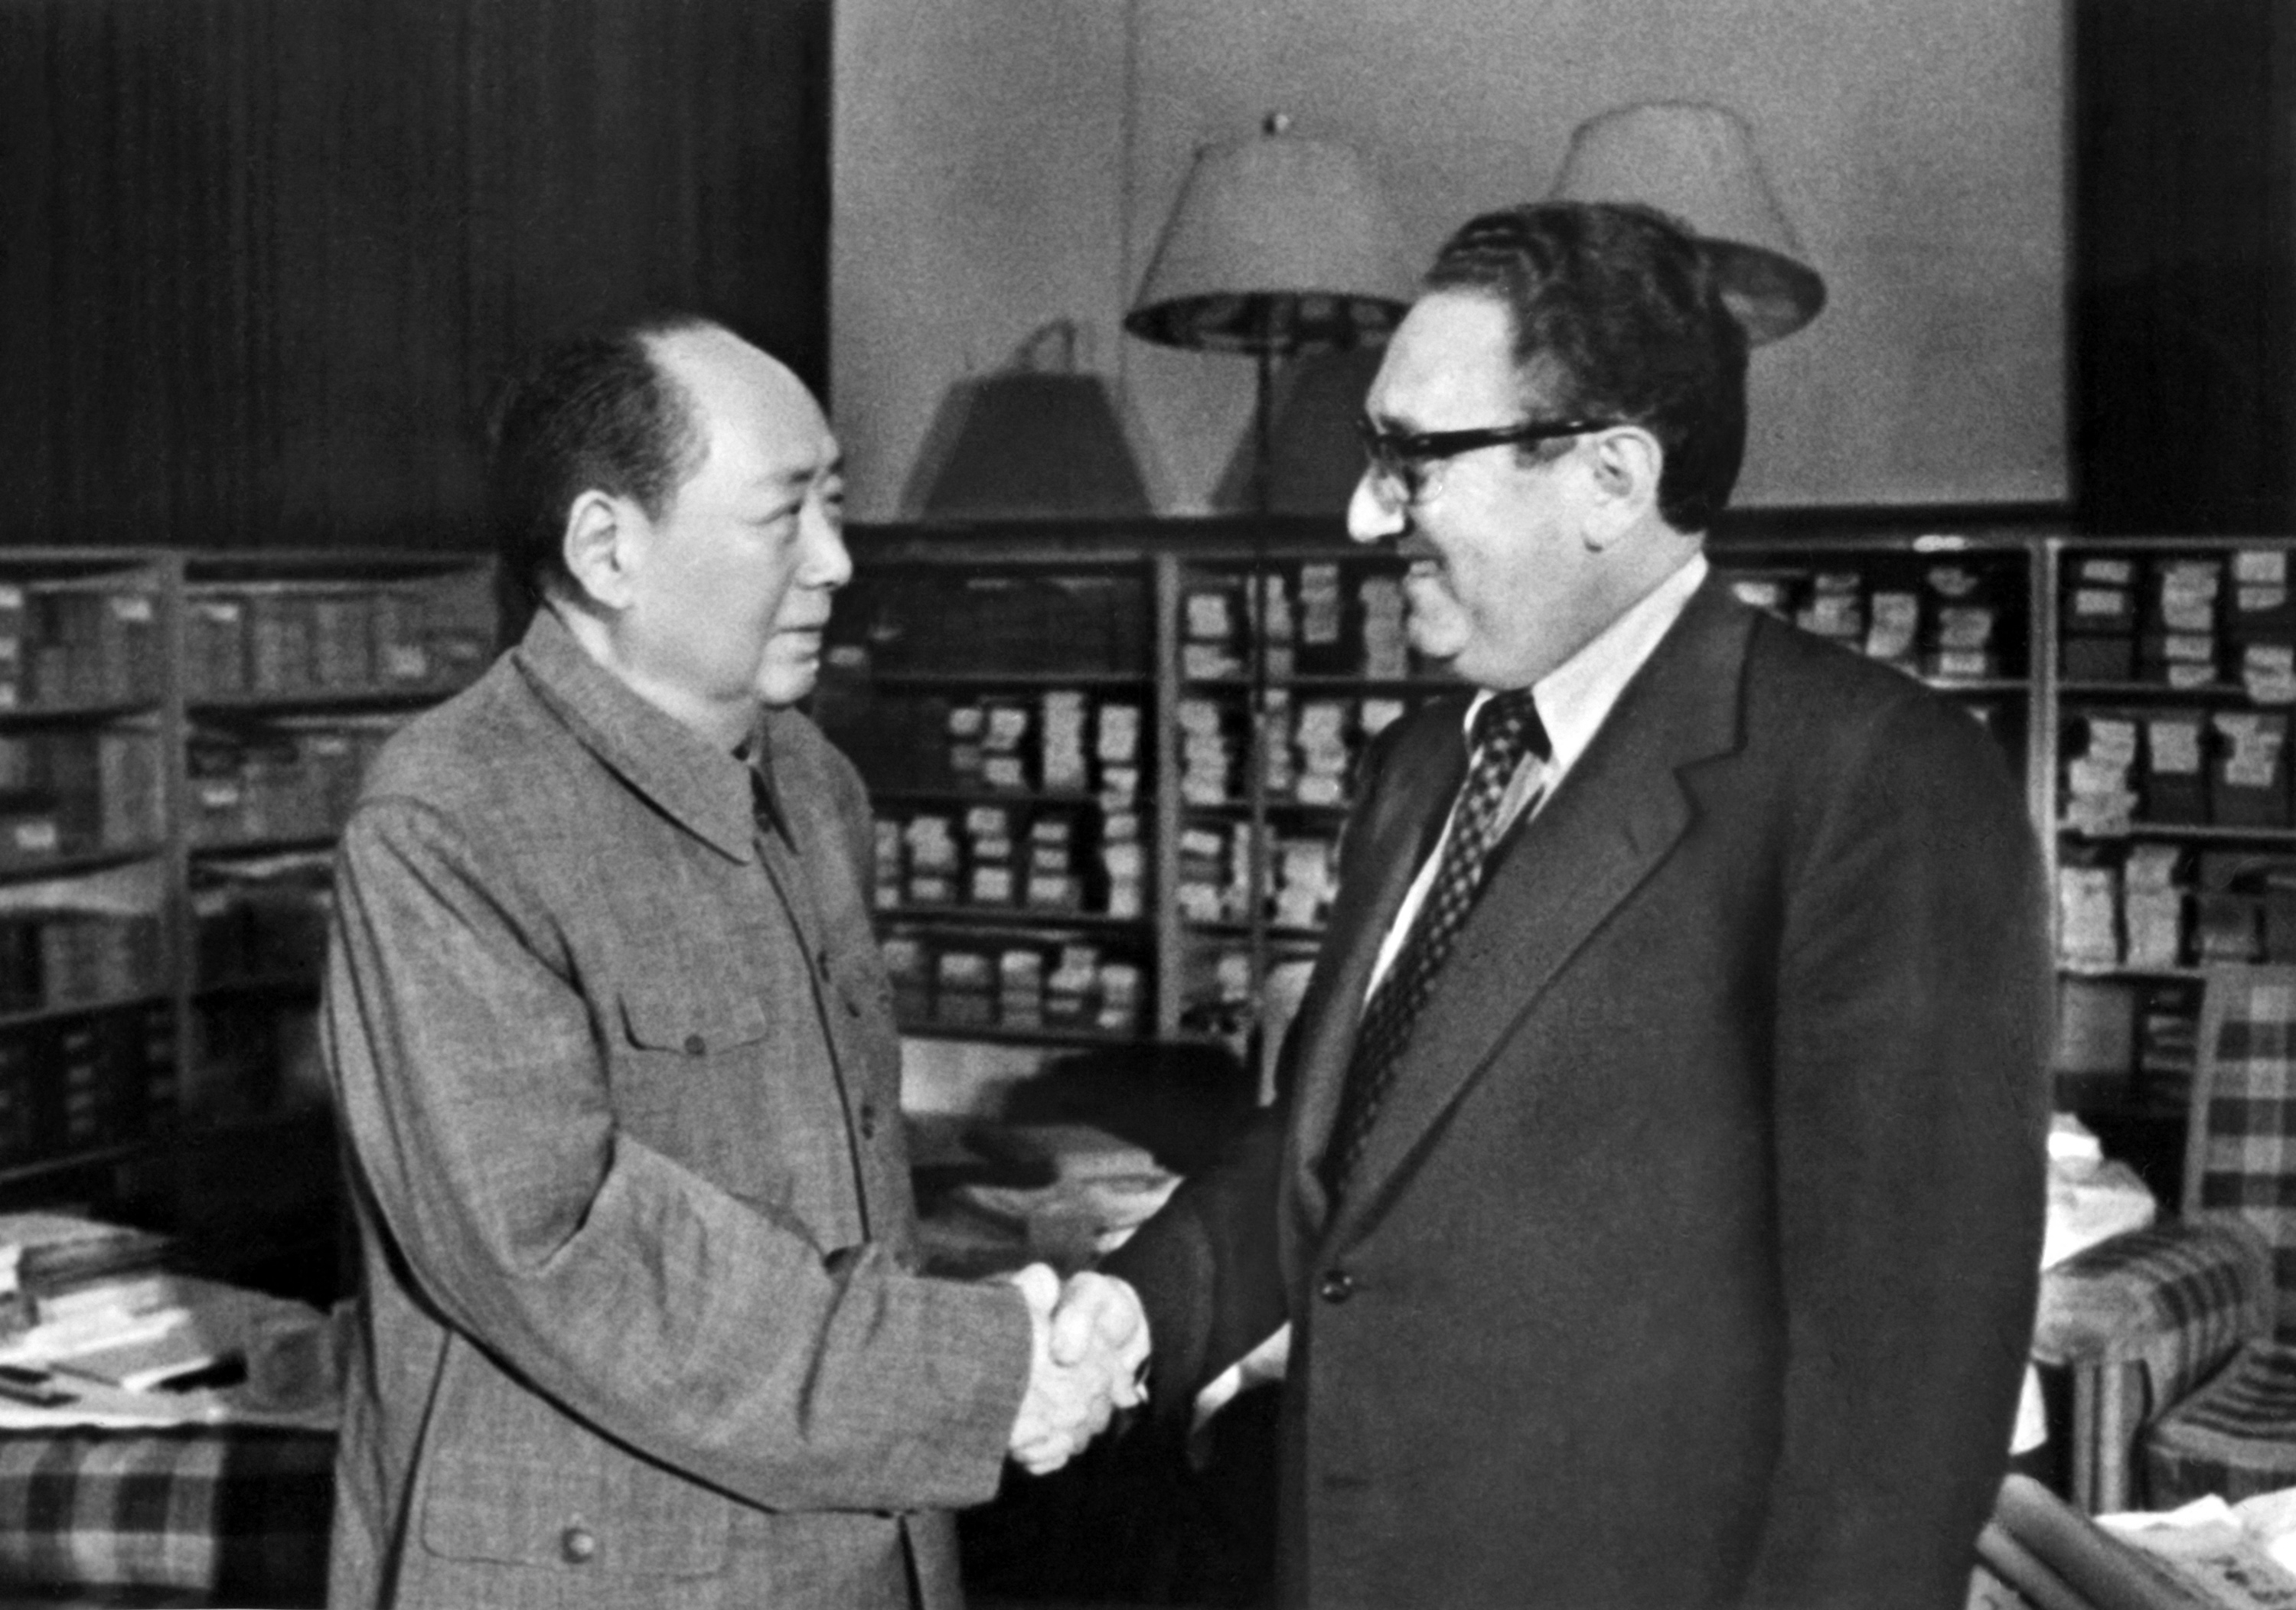 탈냉전으로 나아가는 세계 질서를 짰다는 평가를 듣는 헨리 키신저 전 미국 국무장관은 ‘핑퐁외교’(1971년)를 시작으로 중국과 교류 물꼬를 트기 시작해 미중의 공식 수교(1979년)도 이끌어 냈다. 키신저(오른쪽) 전 장관이 1973년 11월 24일 중국 베이징을 찾아 마오쩌둥 주석을 만나는 장면. AFP 연합뉴스